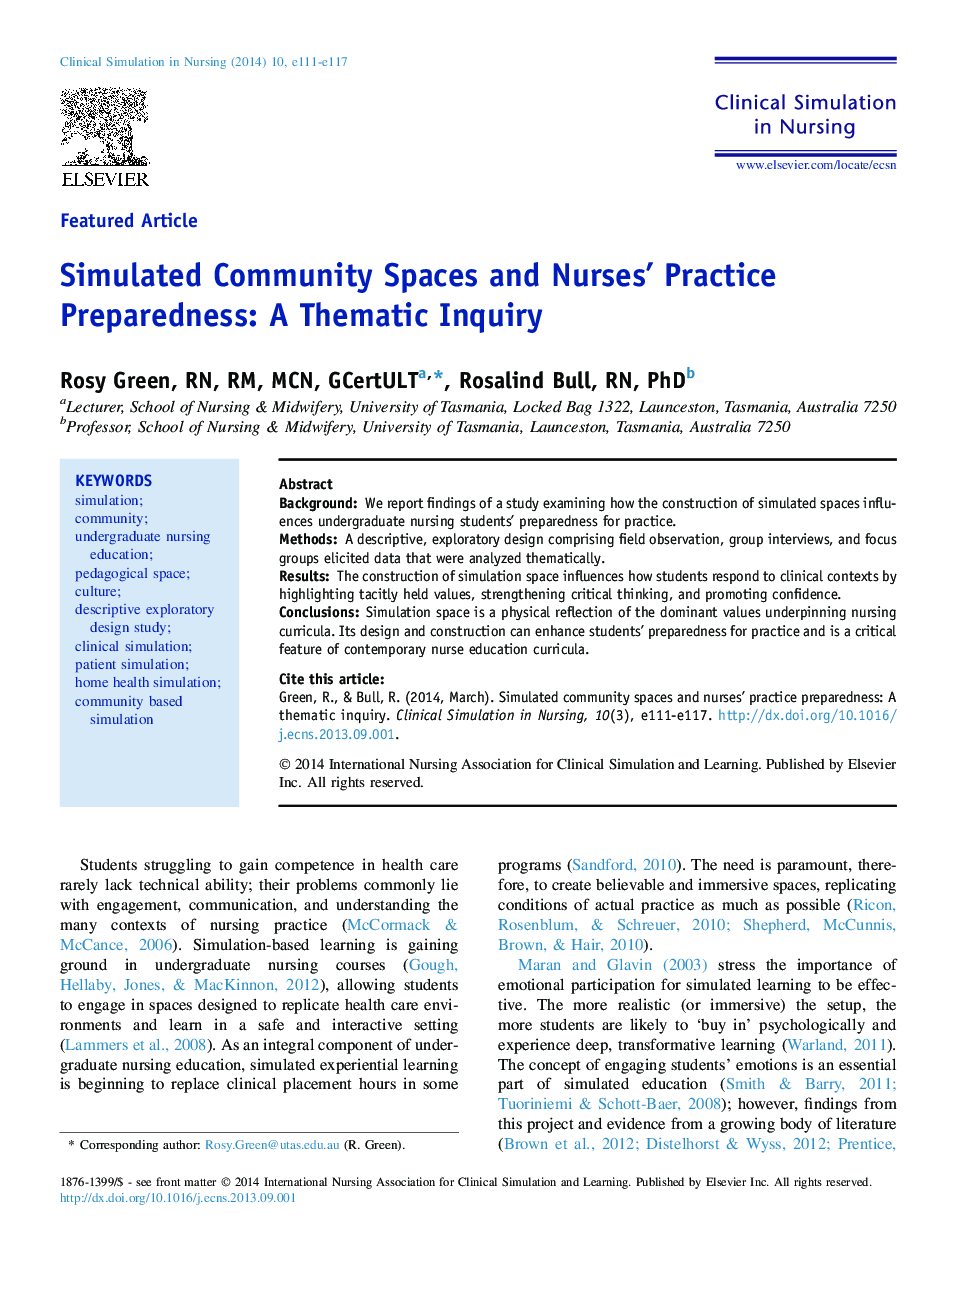 شبیه سازی فضاهای جامعه و آمادگی تمرین پرستاران: یک تحقیق موضوعی 